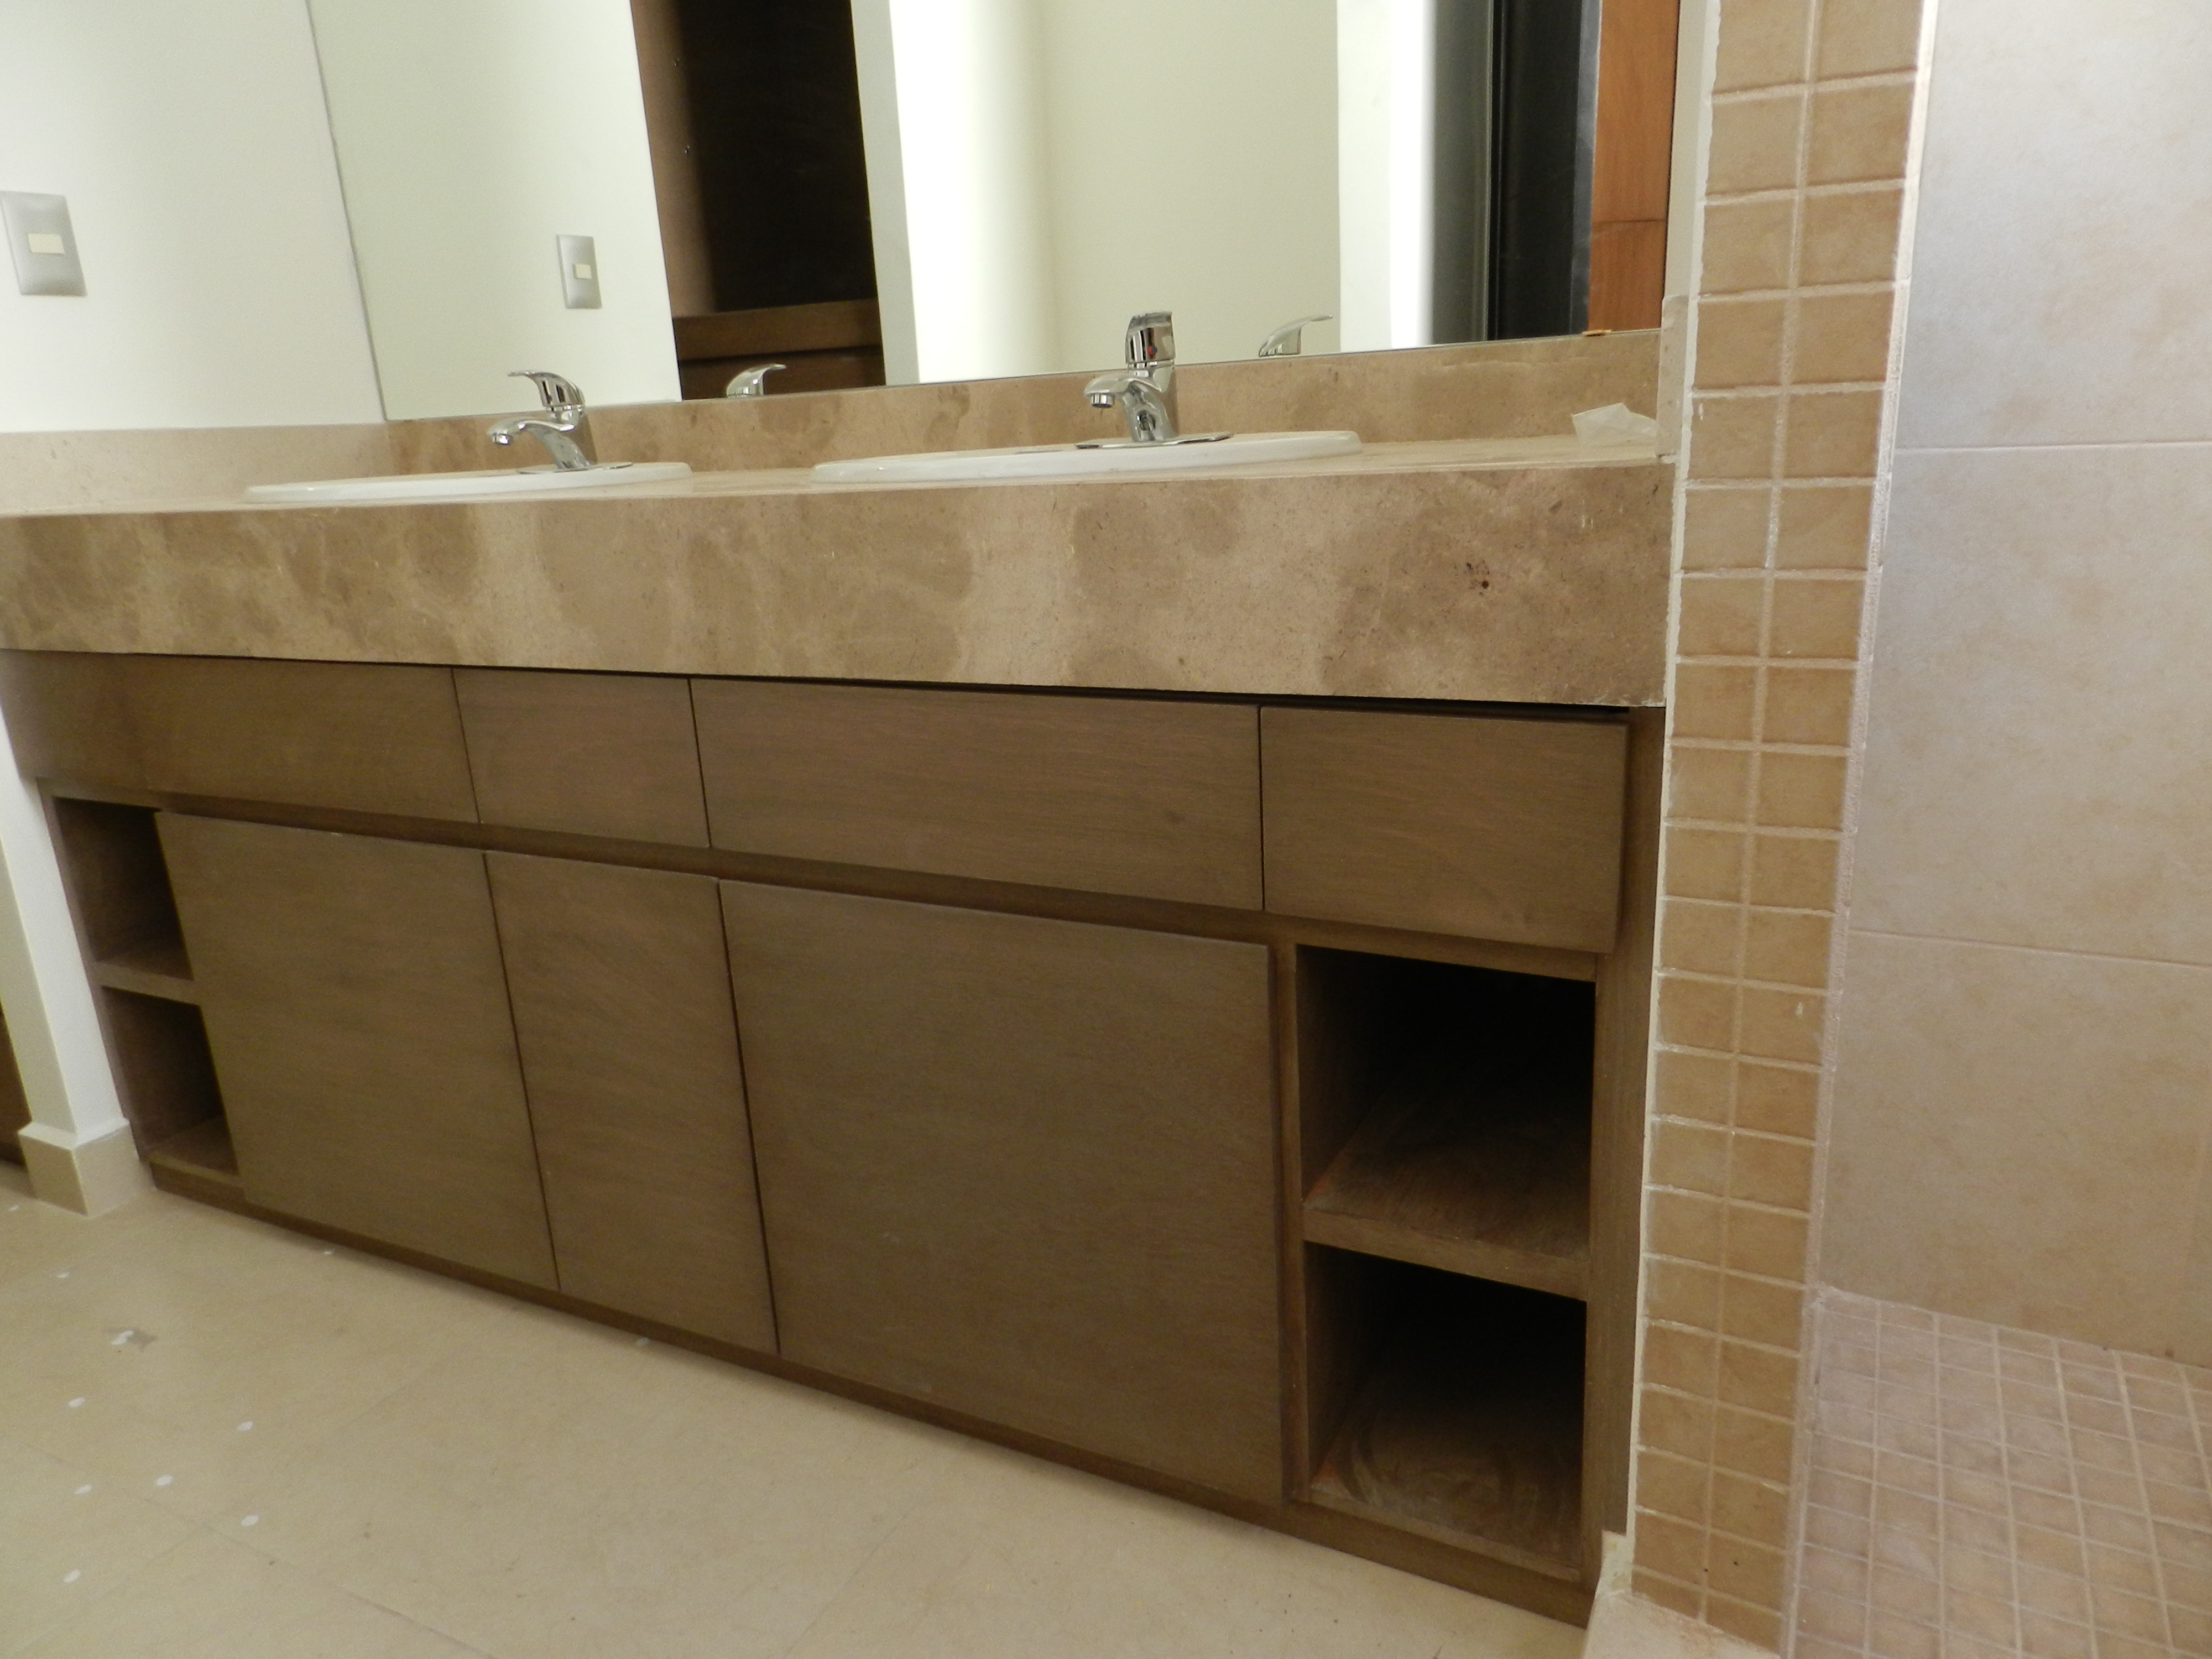 Ventajas de muebles de madera para baños - Muebles de madera a medida